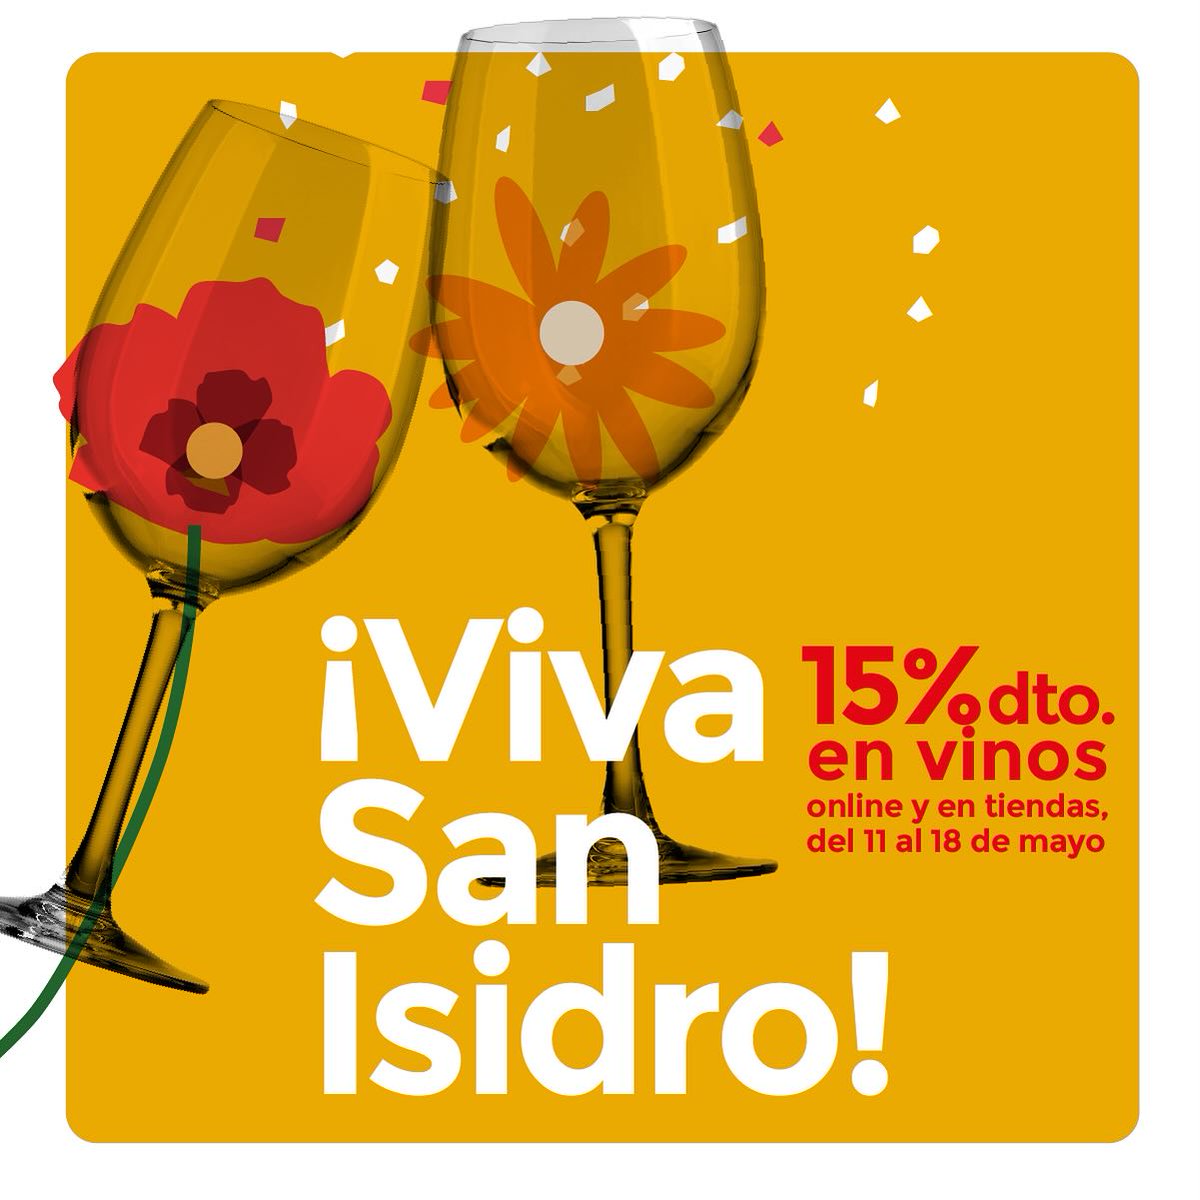 Del 11 al 18 de mayo en Bodegas @BarahondaYecla celebramos las fiestas de San Isidro con descuentos del 15% en vinos. ¡Viva San Isidro! ¡Viva el vino! Tienda de vinos online: barahonda.com/tienda/ - Important discounts on our wines for San Isidro!